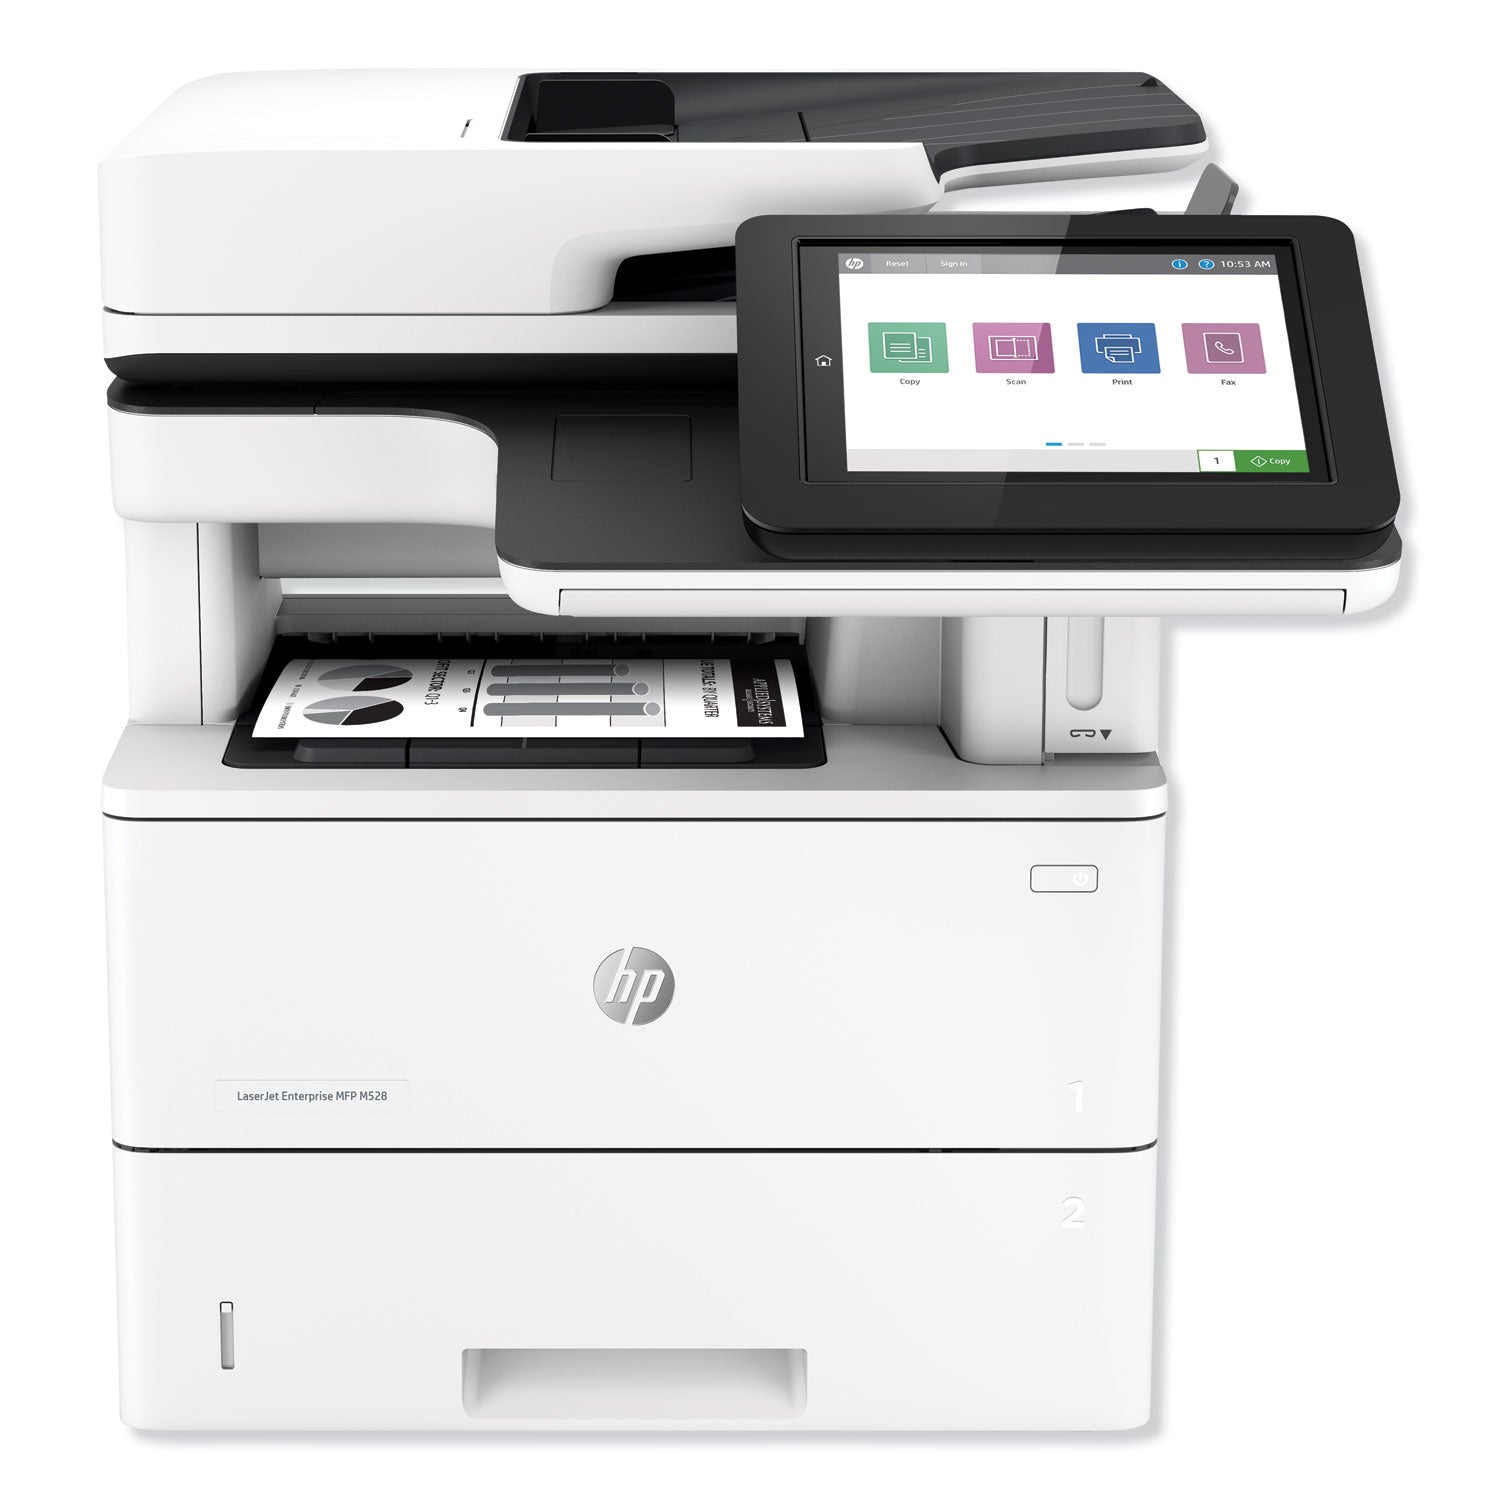 laserjet-enterprise-mfp-m528f-multifunction-laser-printer-copy-fax-print-scan_hew1pv65a - 1